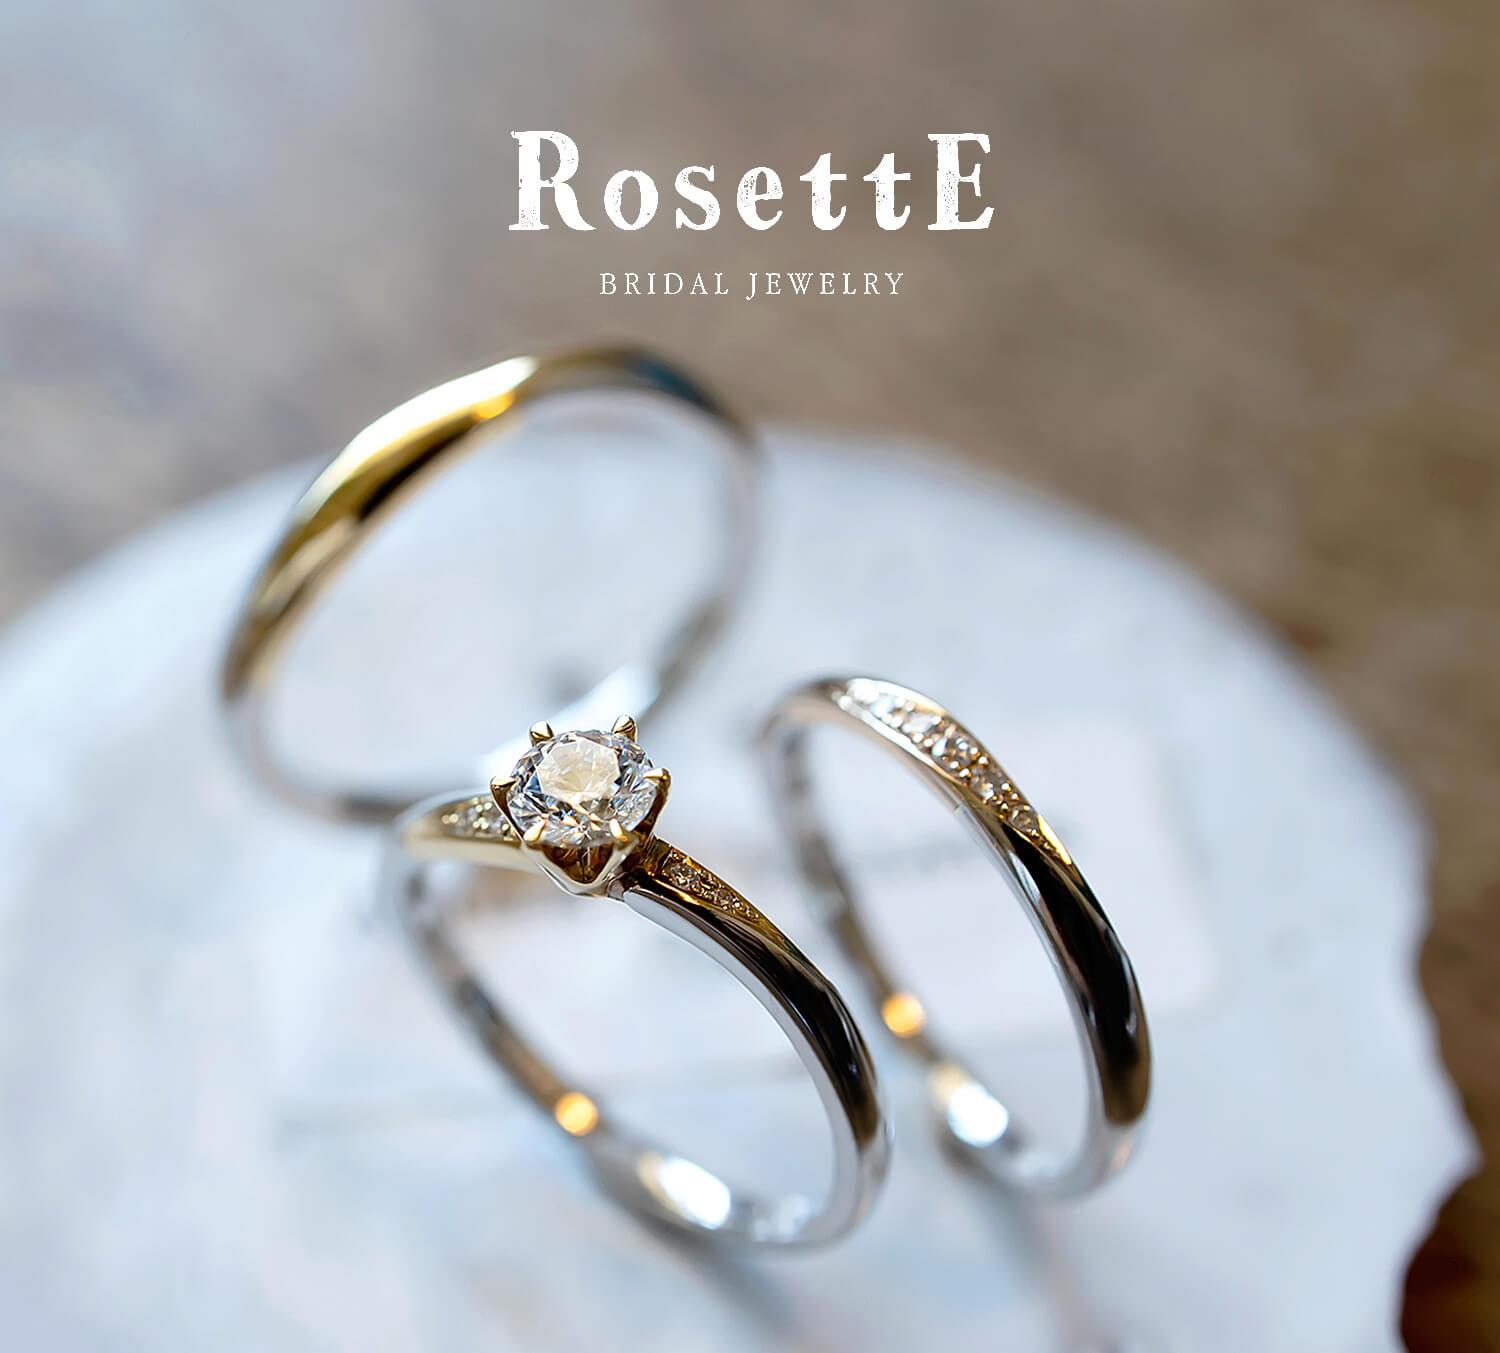 RosettEロゼットの婚約指輪と結婚指輪